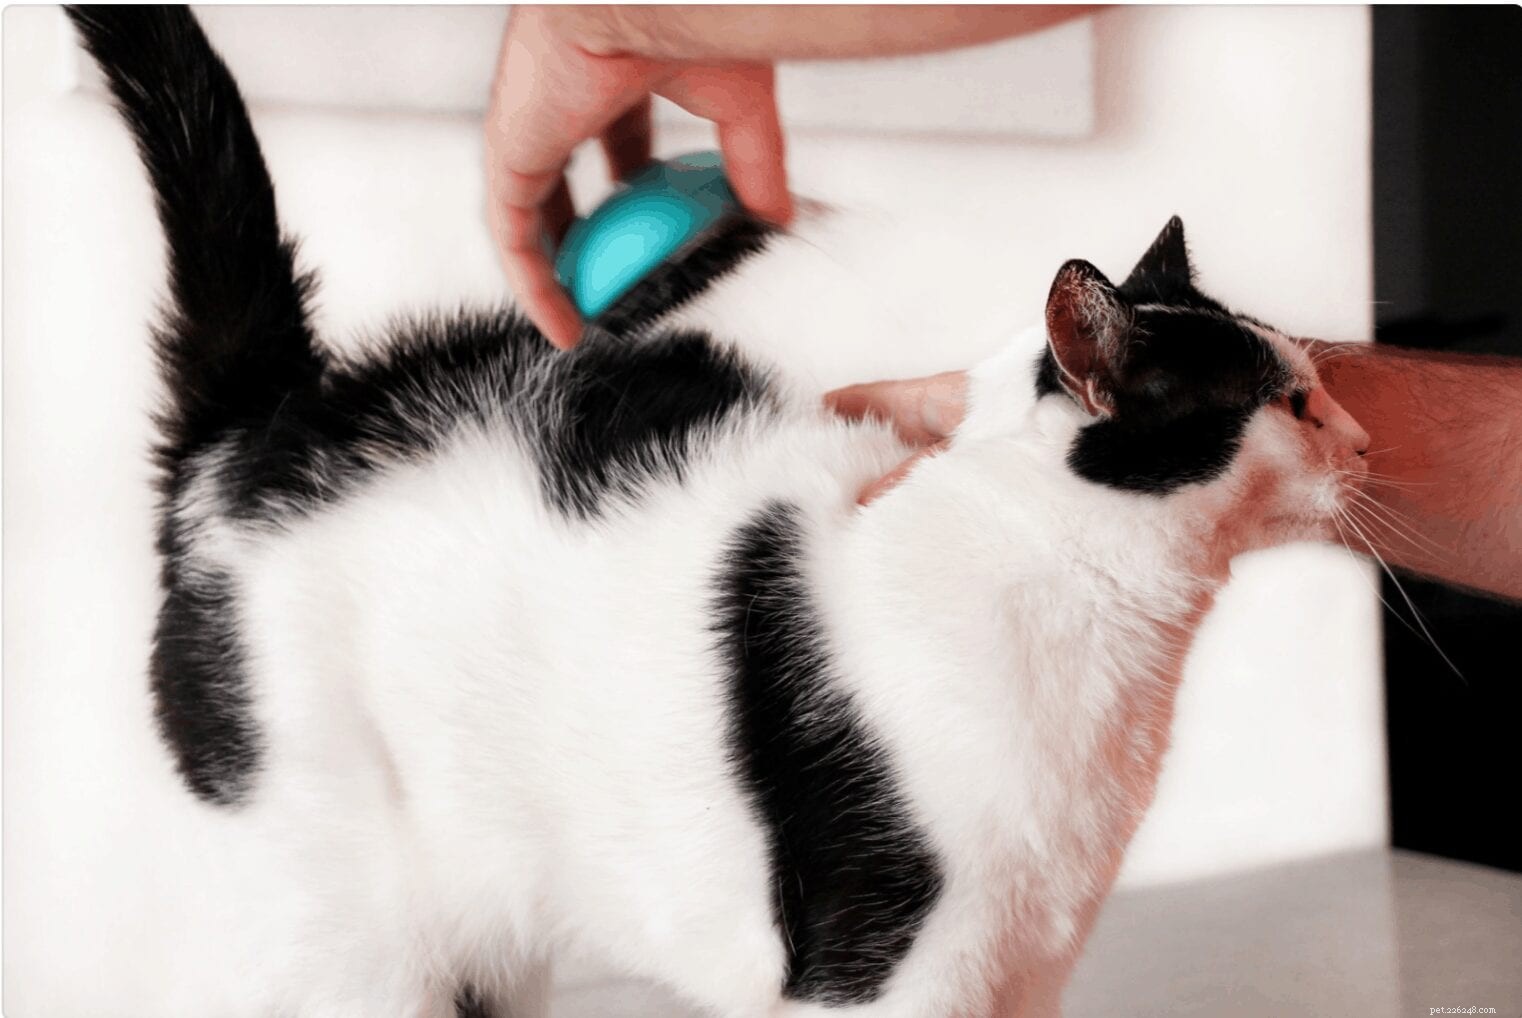 Forfora di gatto:perché succede e come aiutare il tuo gattino